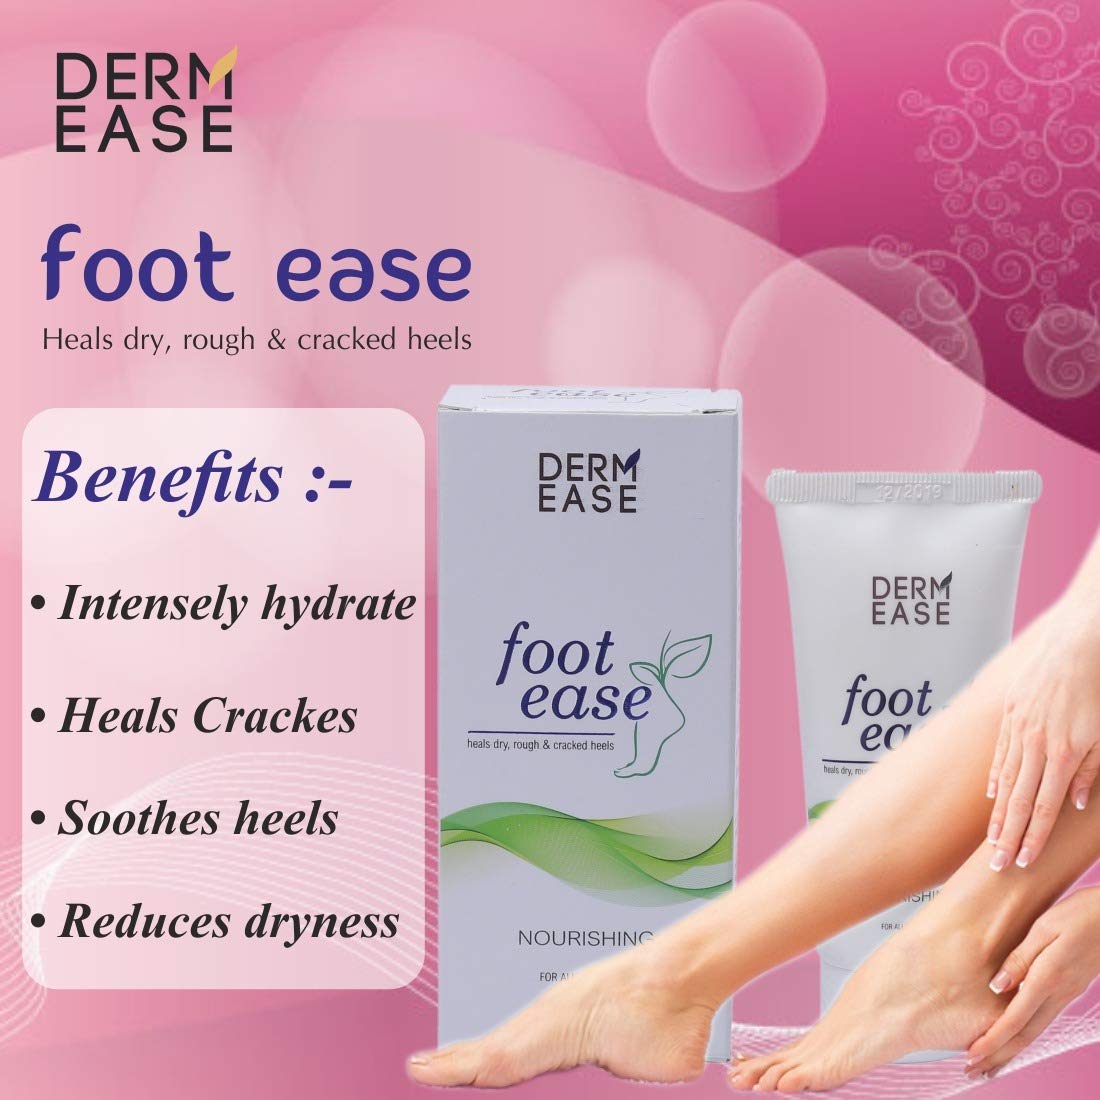 DERM EASE Foot Ease Cream